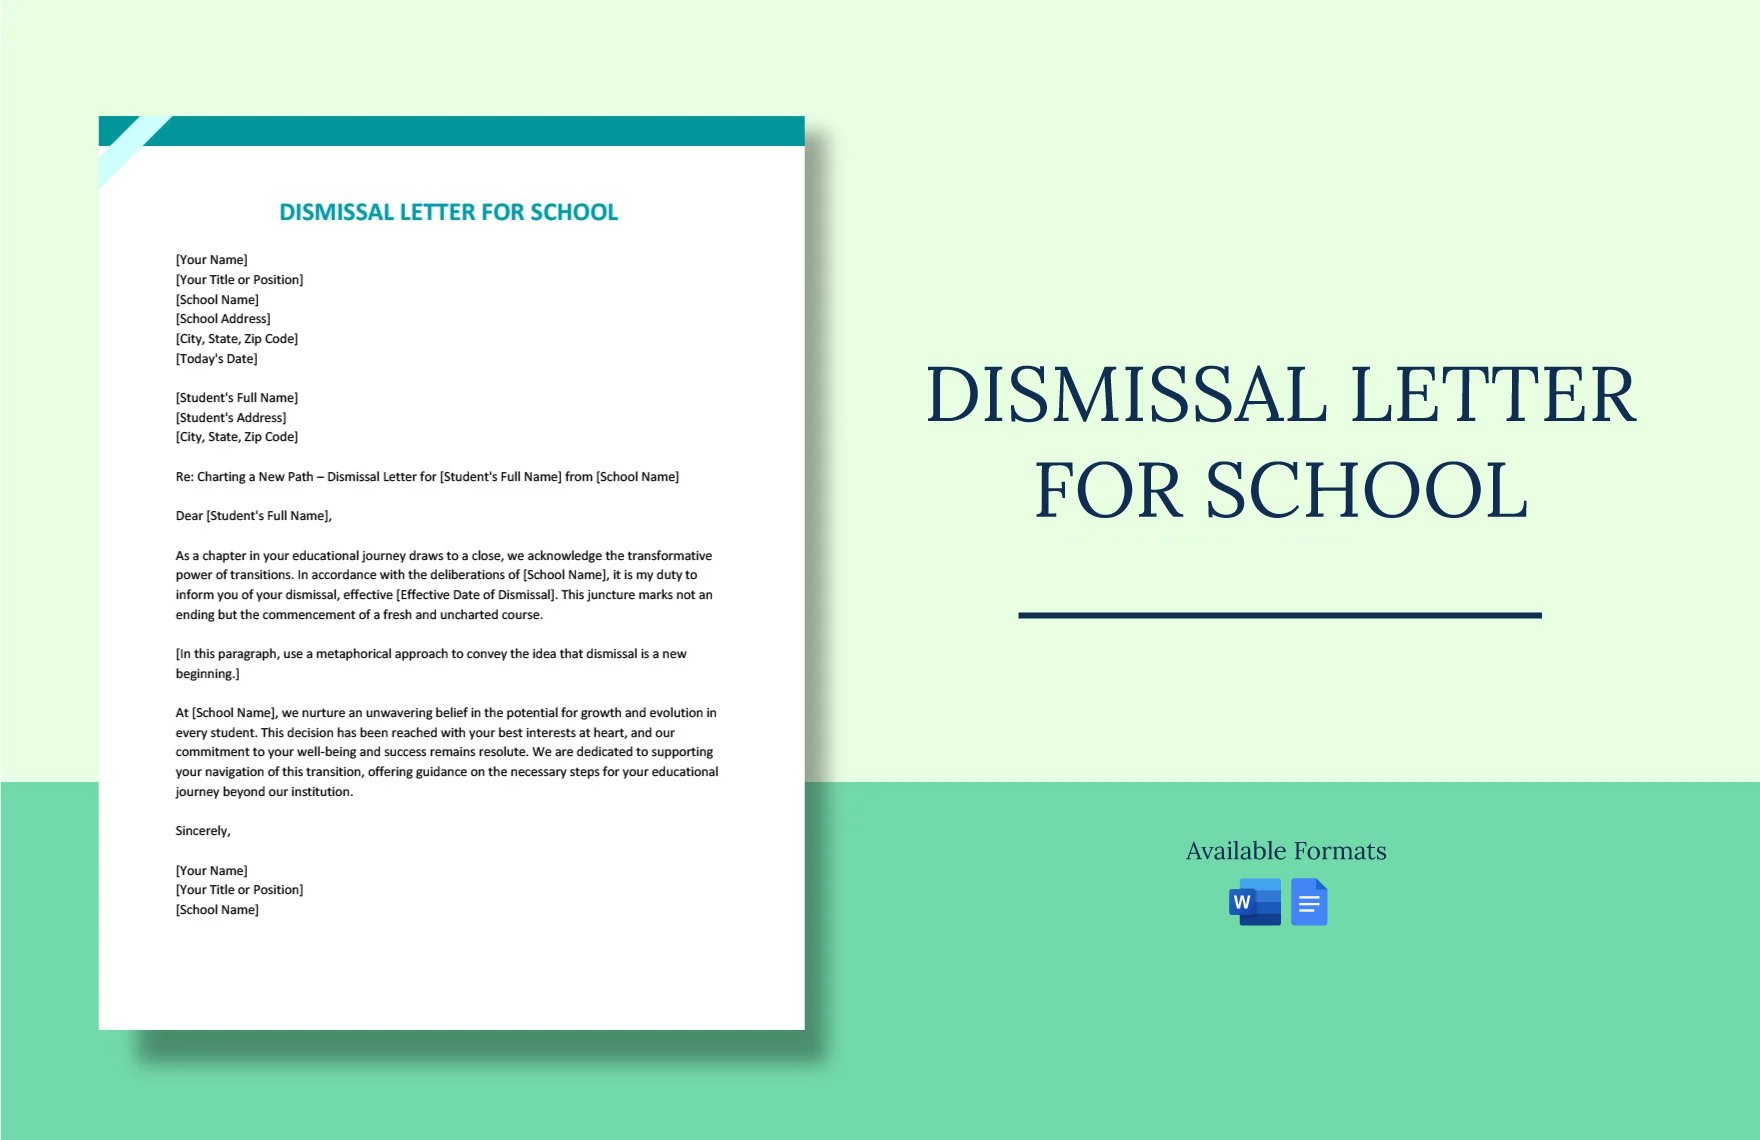 Dismissal Letter For School in Word, Google Docs